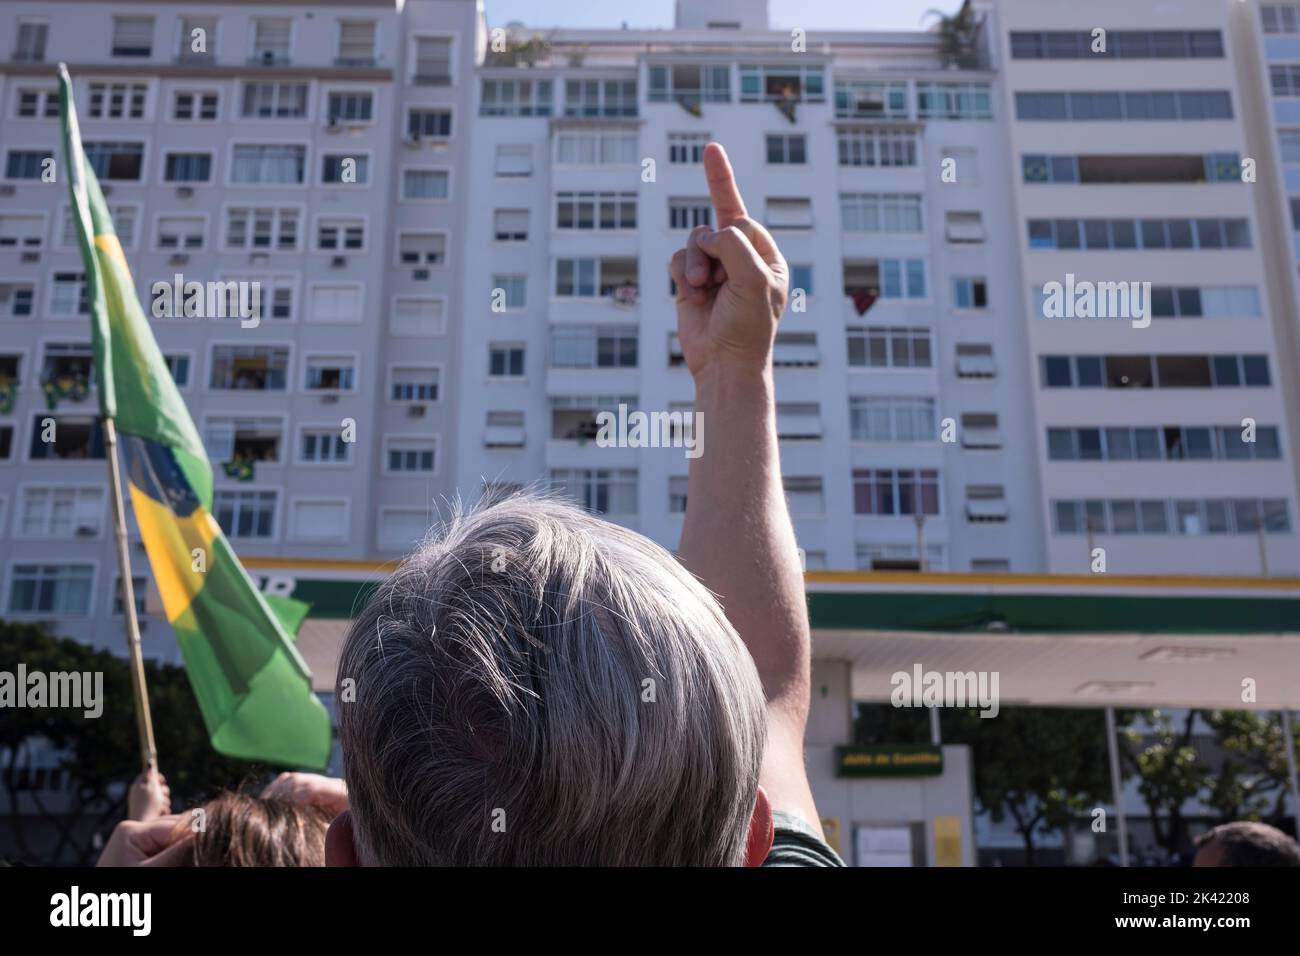 Bolsonaros Anhänger veranstalten am Tag der Feier der 200-jährigen Unabhängigkeit Brasiliens eine politische Demonstration am Strand von Coabba. Demonstrator beleidigt und verflucht Bewohner, die Sympathie für Präsidentschaftskandidat Luis Inácio Lula da Silva zum Ausdruck gebracht Stockfoto